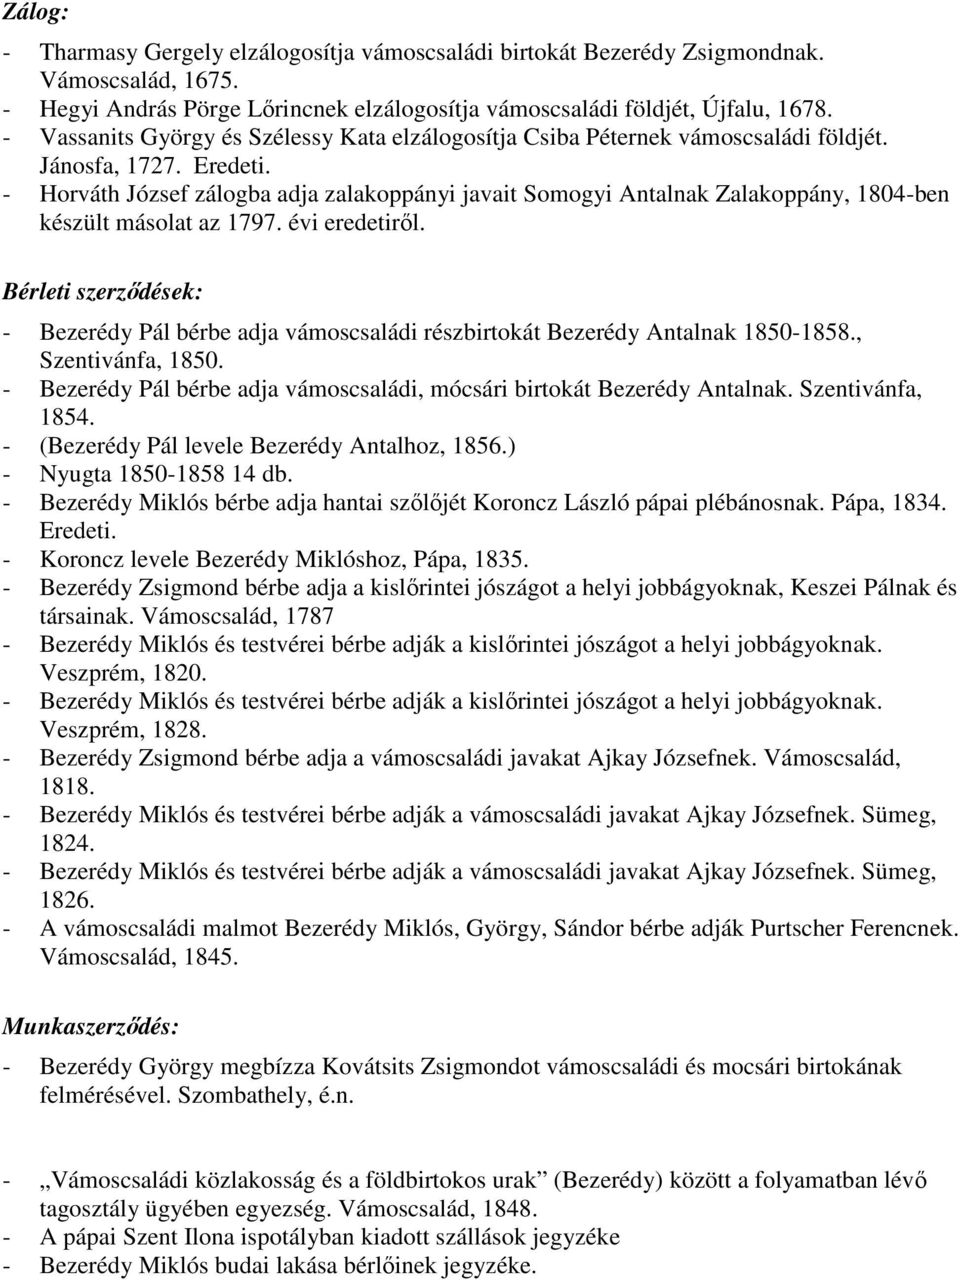 - Horváth József zálogba adja zalakoppányi javait Somogyi Antalnak Zalakoppány, 1804-ben készült másolat az 1797. évi eredetirıl.